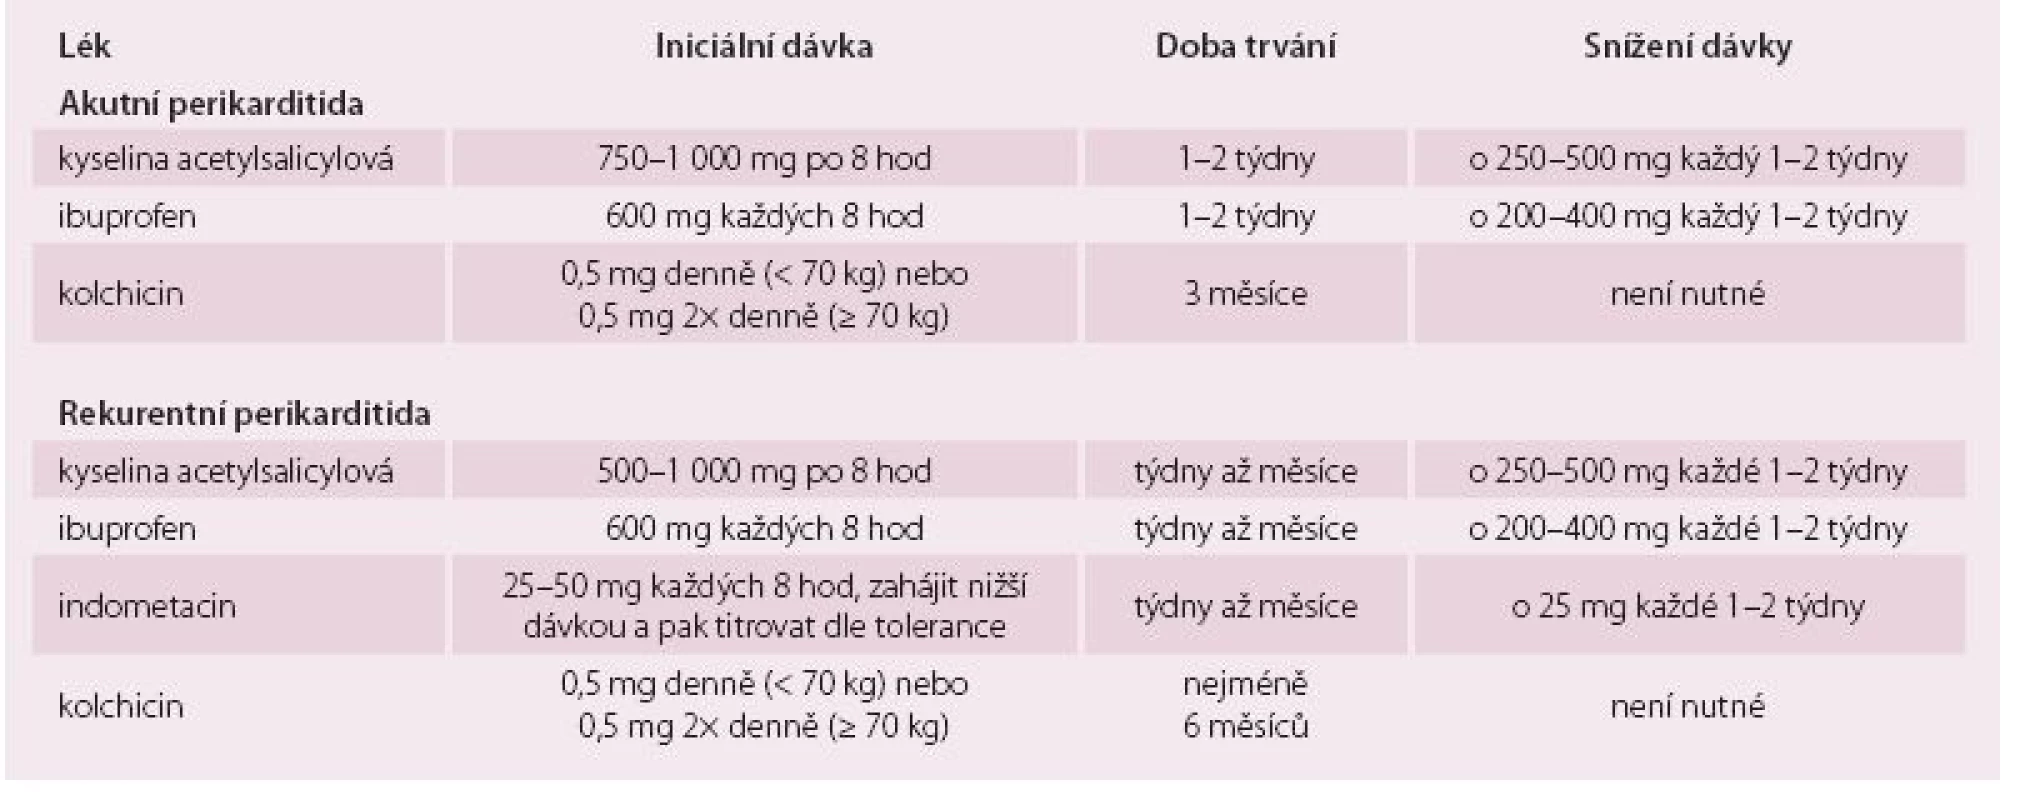 Dávkování léků při léčbě perikarditidy.